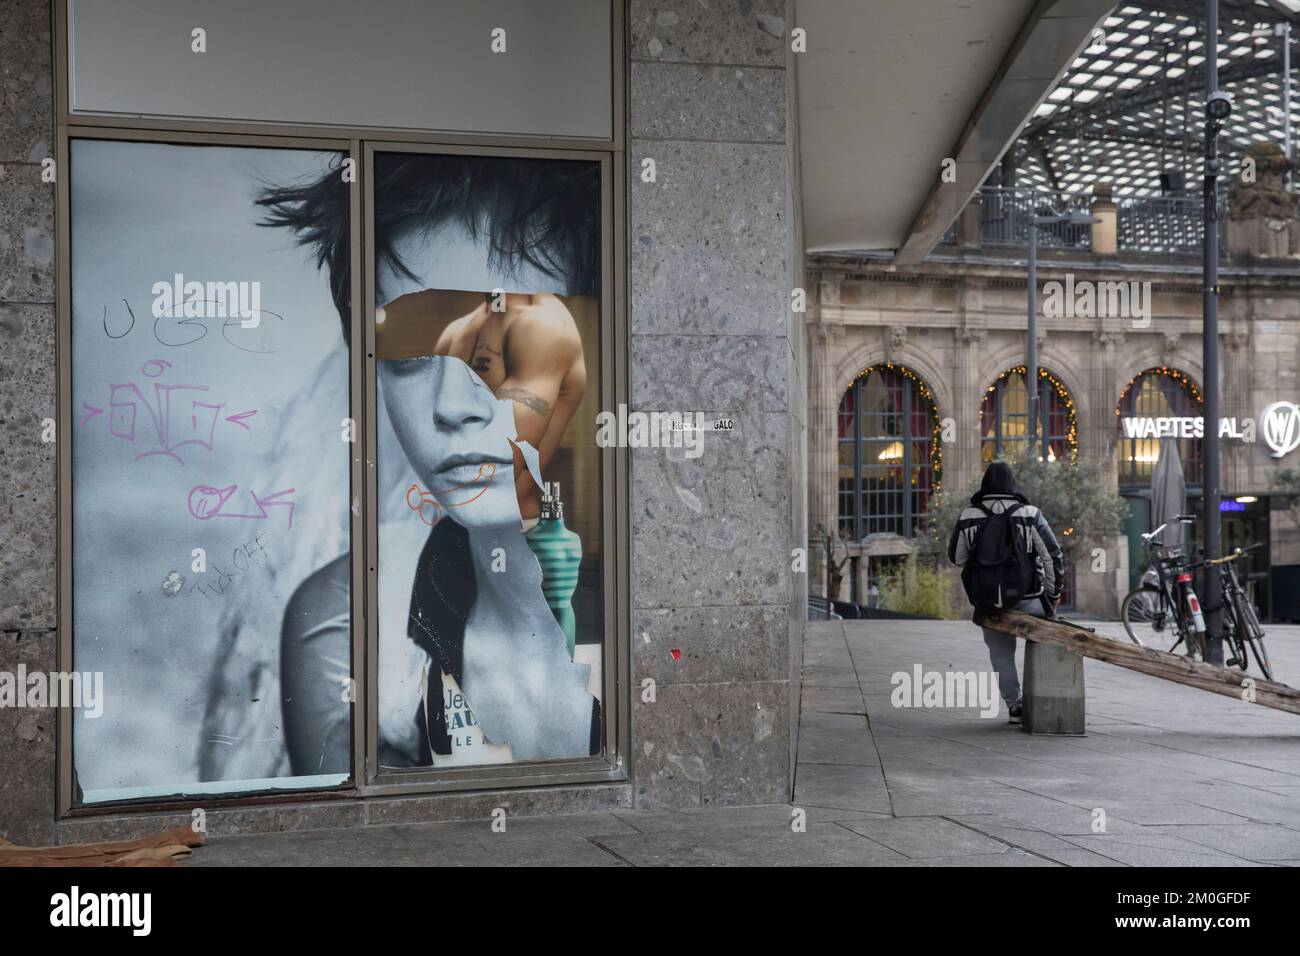 Sexistisches Graffiti auf einem teilweise abgerissenen Werbetoster am Kölner Hauptbahnhof. Sexistisches Graffiti auf einem teils abgerissenen W Stockfoto